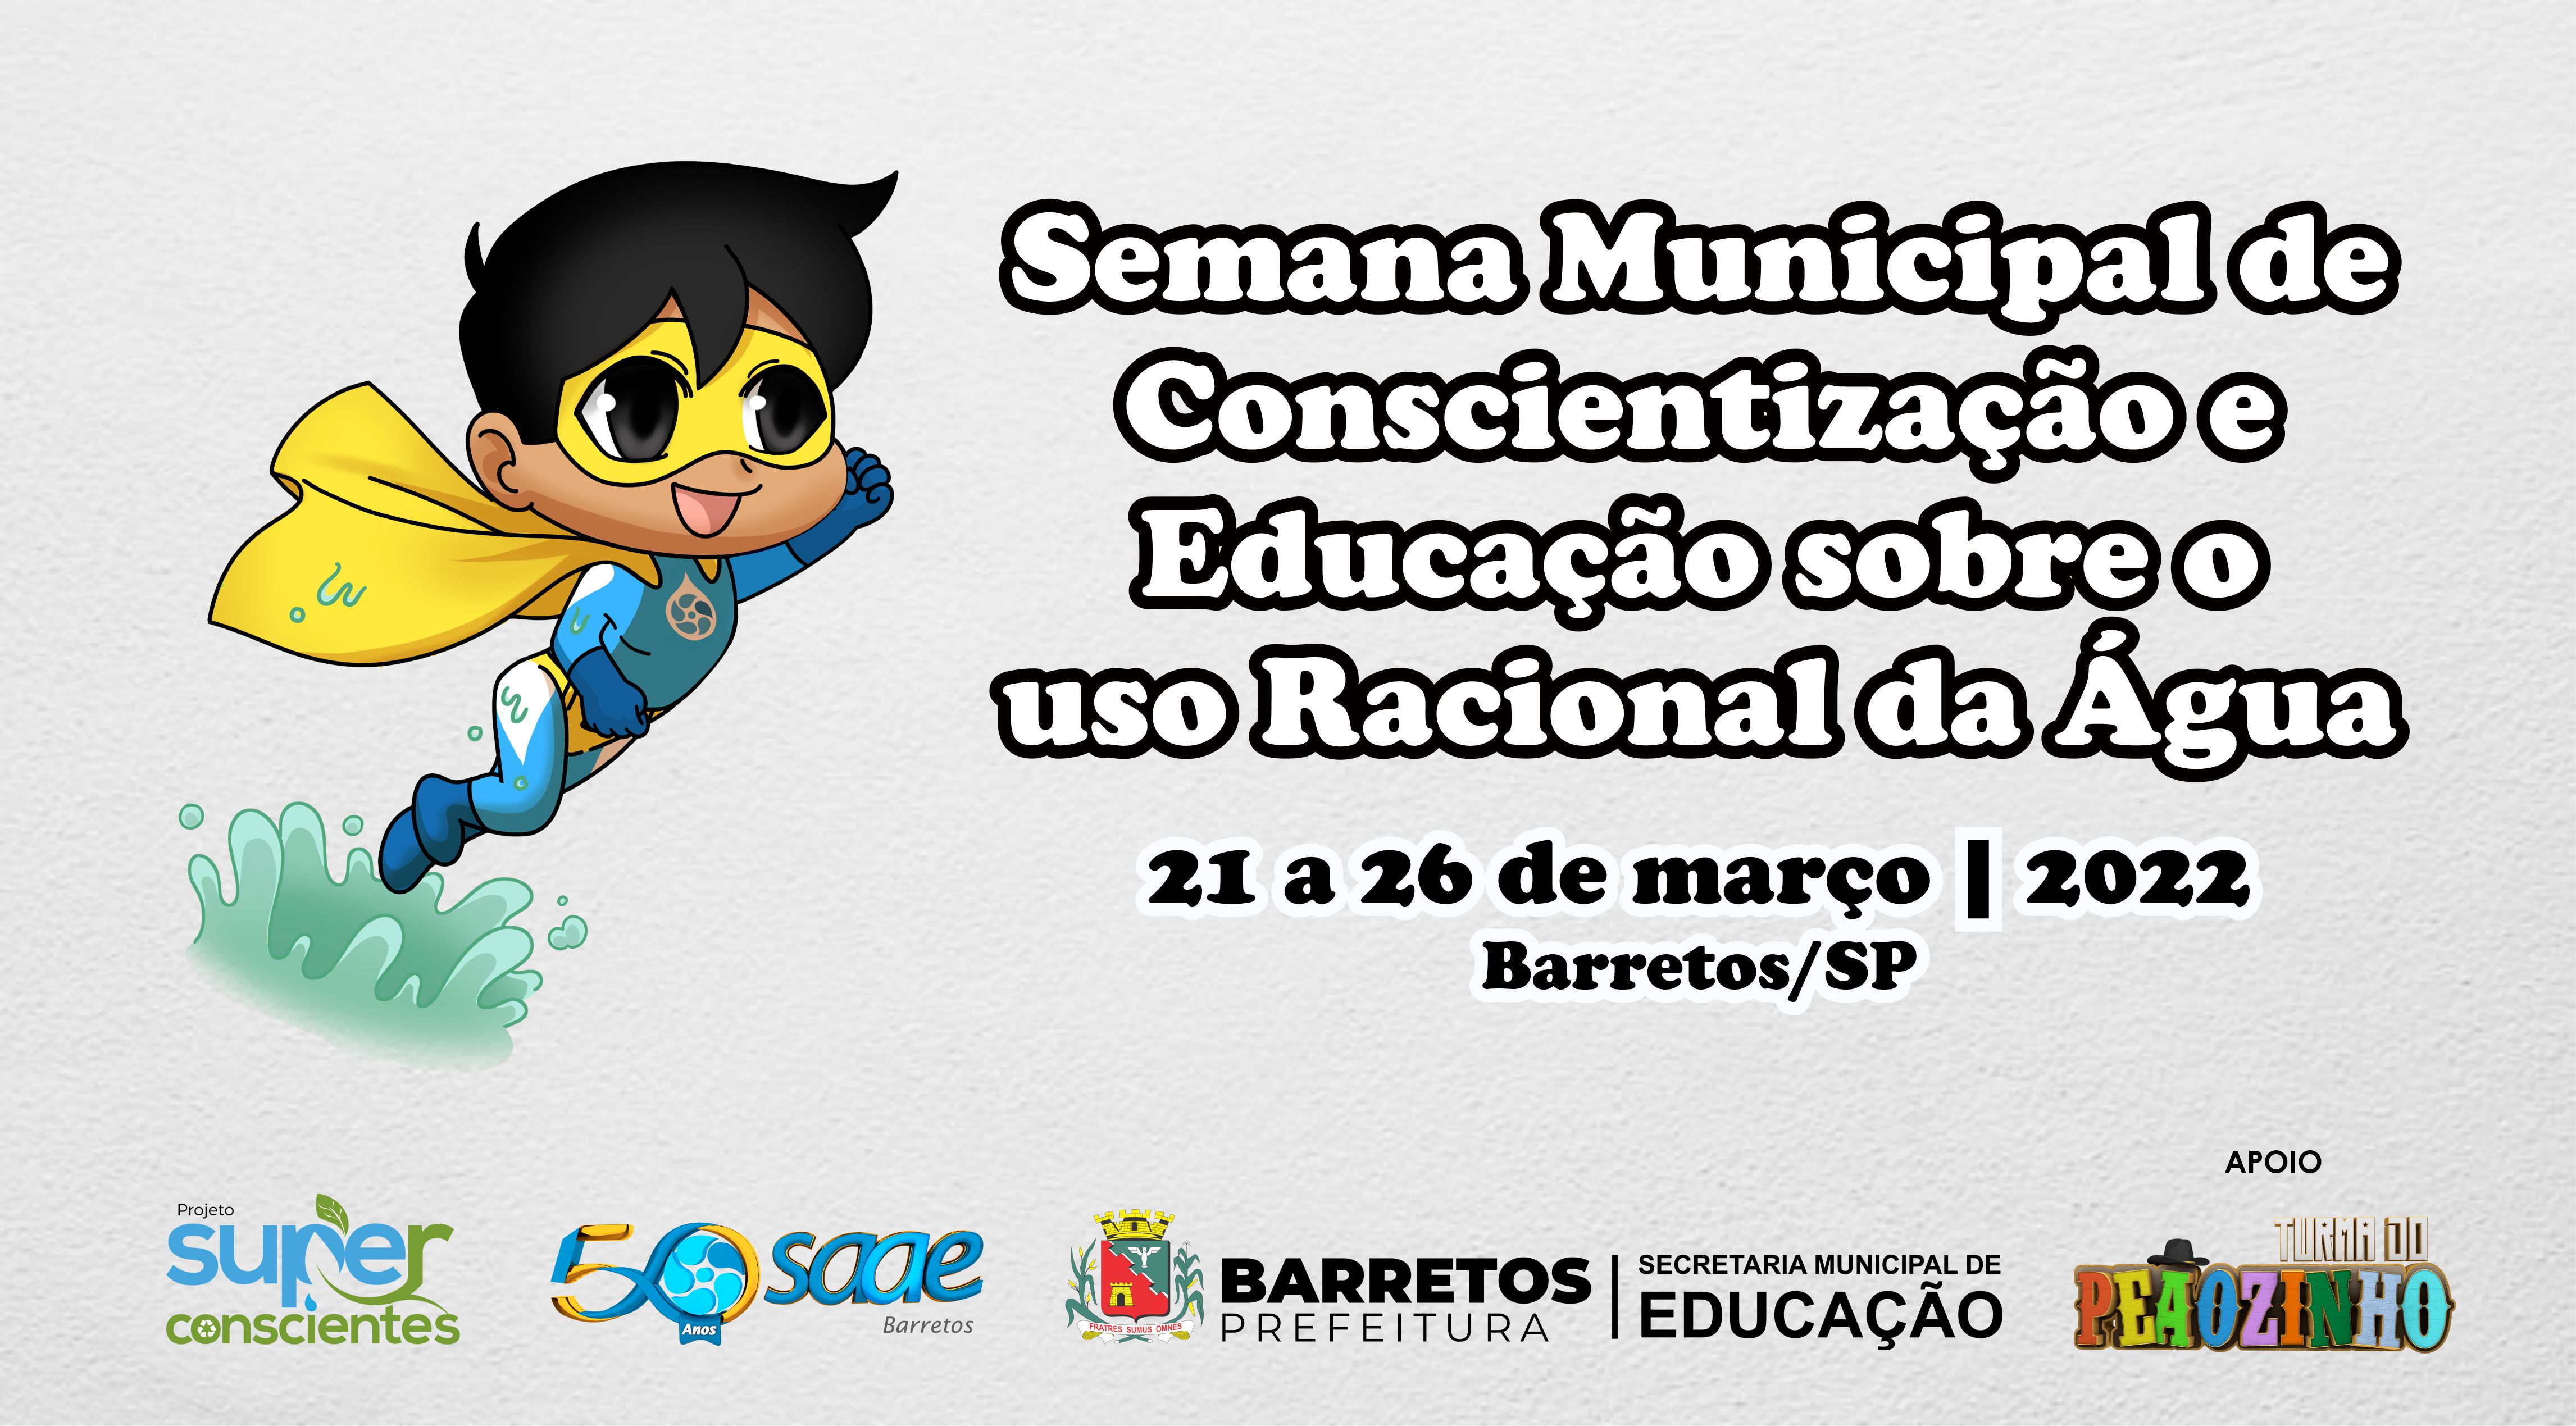 SAAE Barretos e Secretaria de Educação promovem Semana Municipal de Conscientização e Educação sobre o Uso Racional da Água